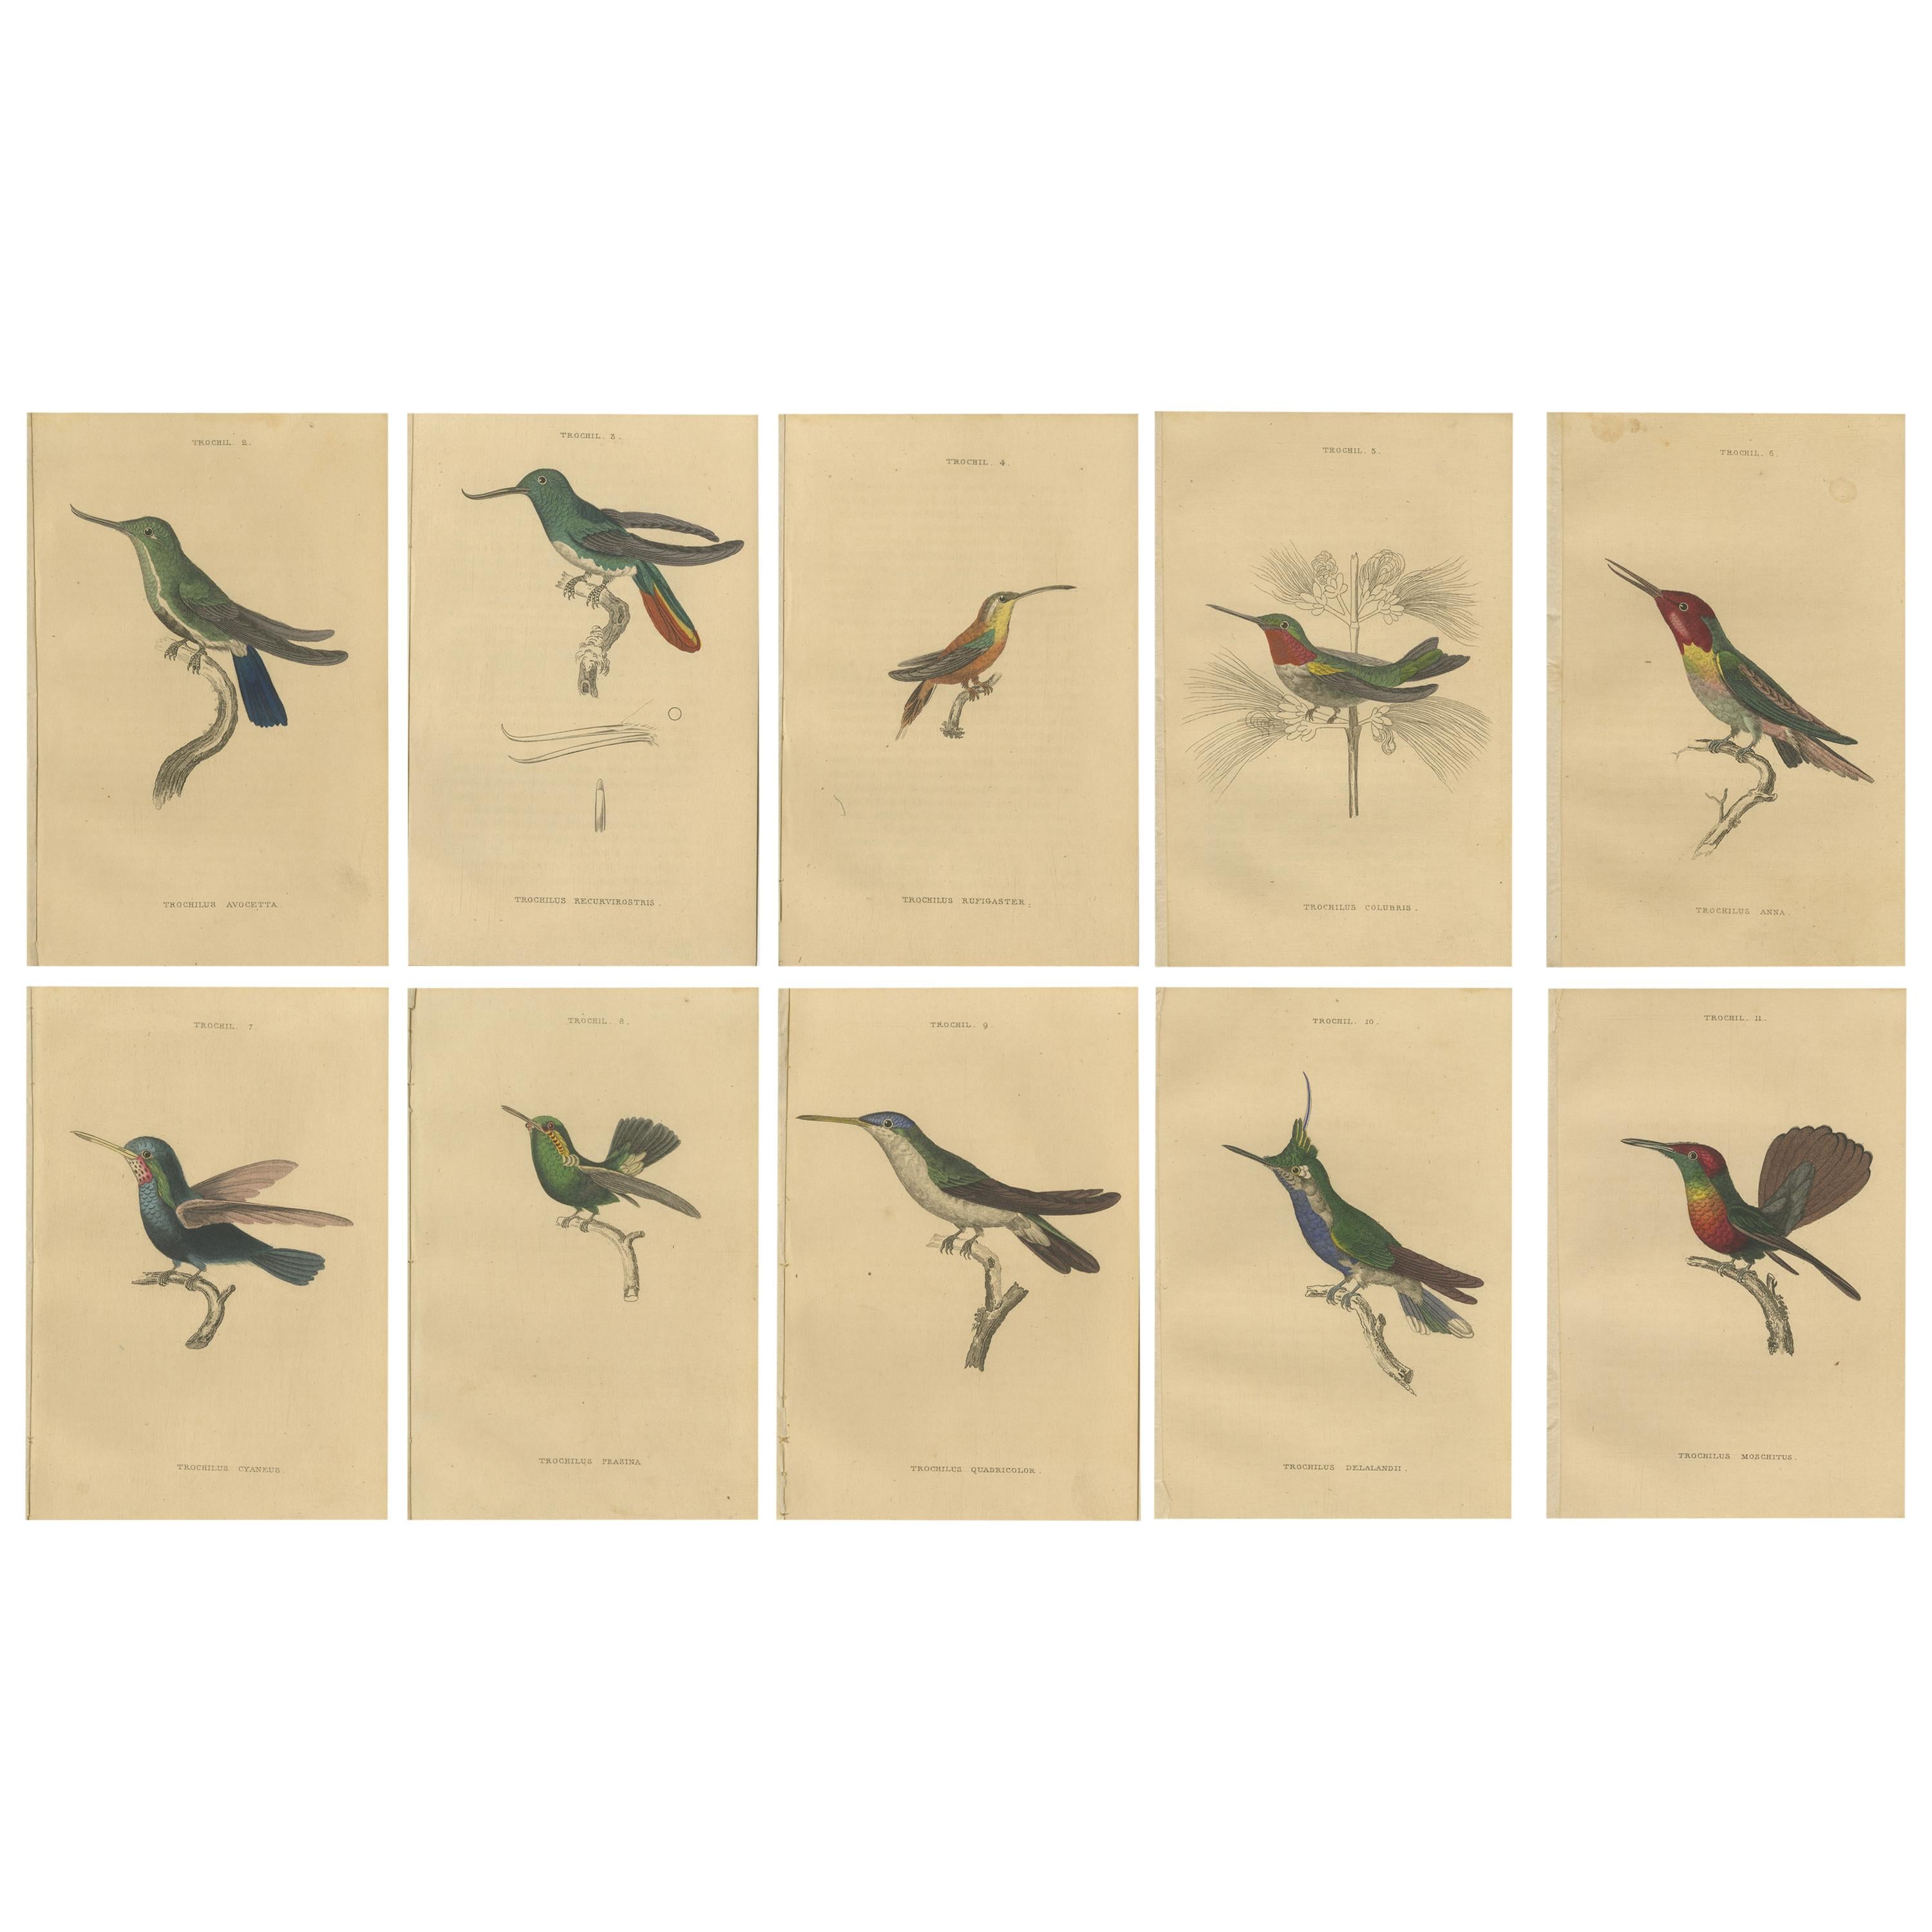 Impressions d'oiseaux coquillages, oiseaux coquillages colorés à la main par Jardine, 1837